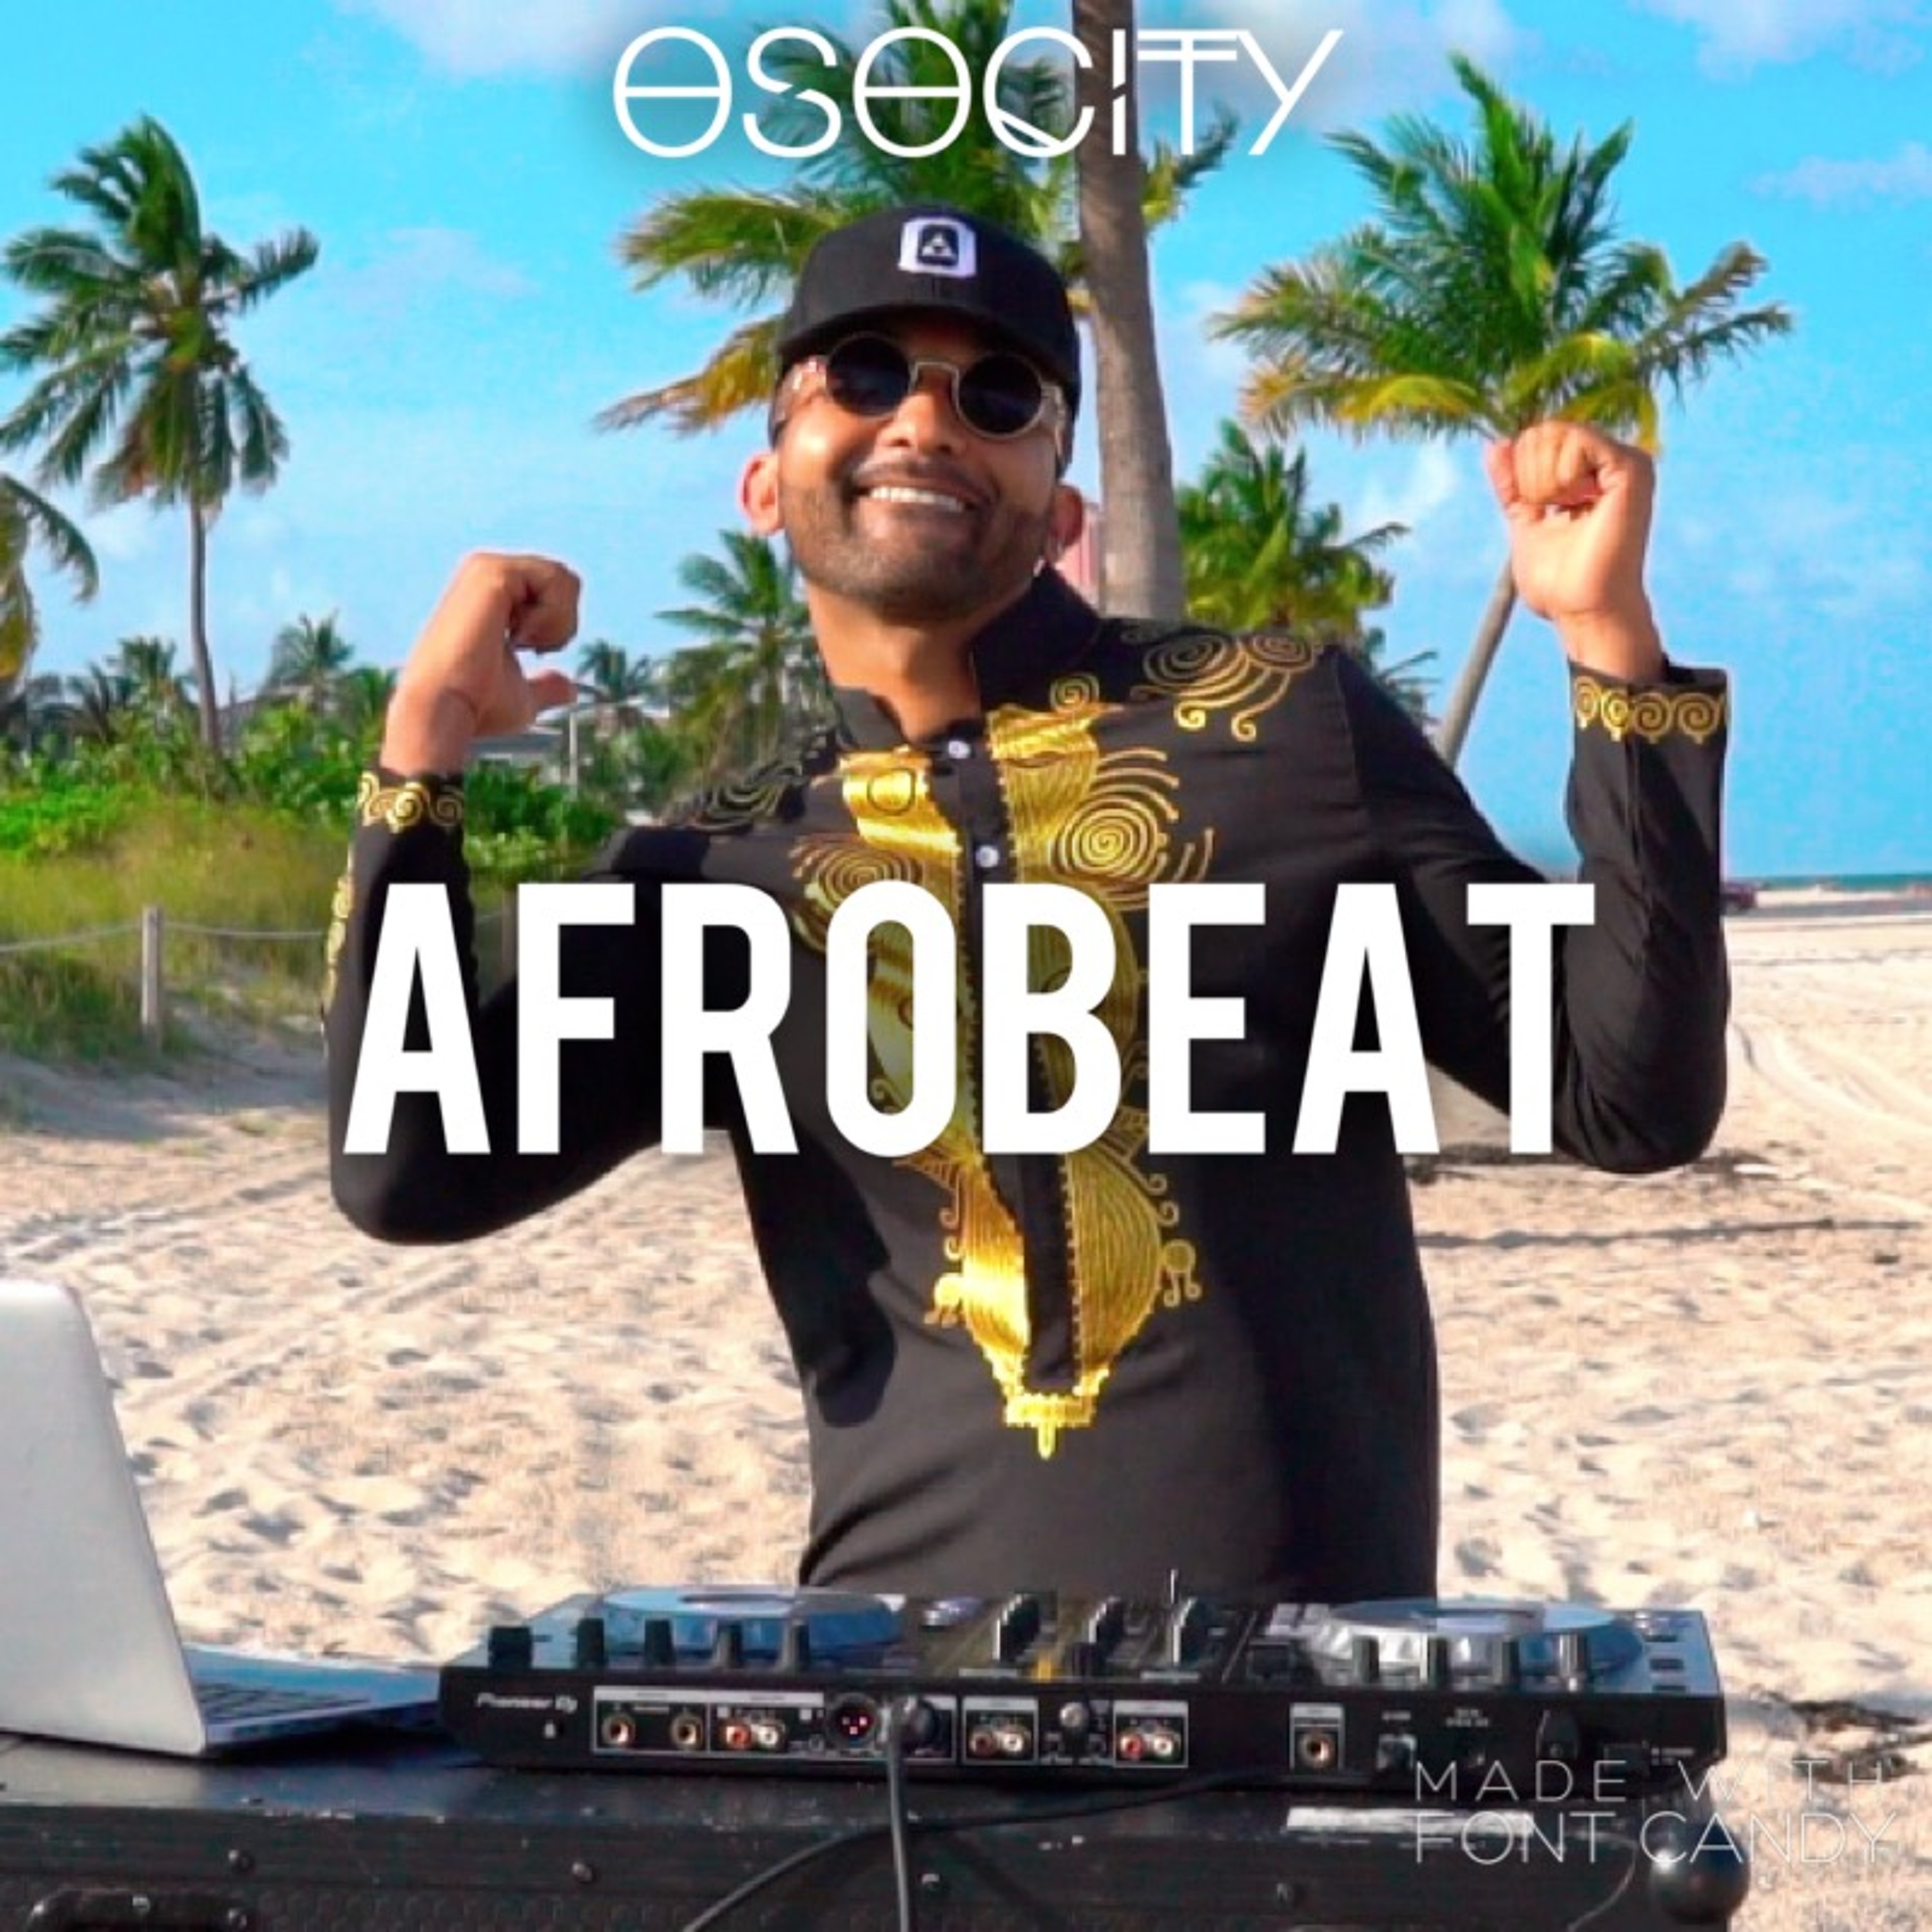 OSOCITY Afrobeat Mix | Flight OSO 68 – OSOCITY Podcast – Podtail